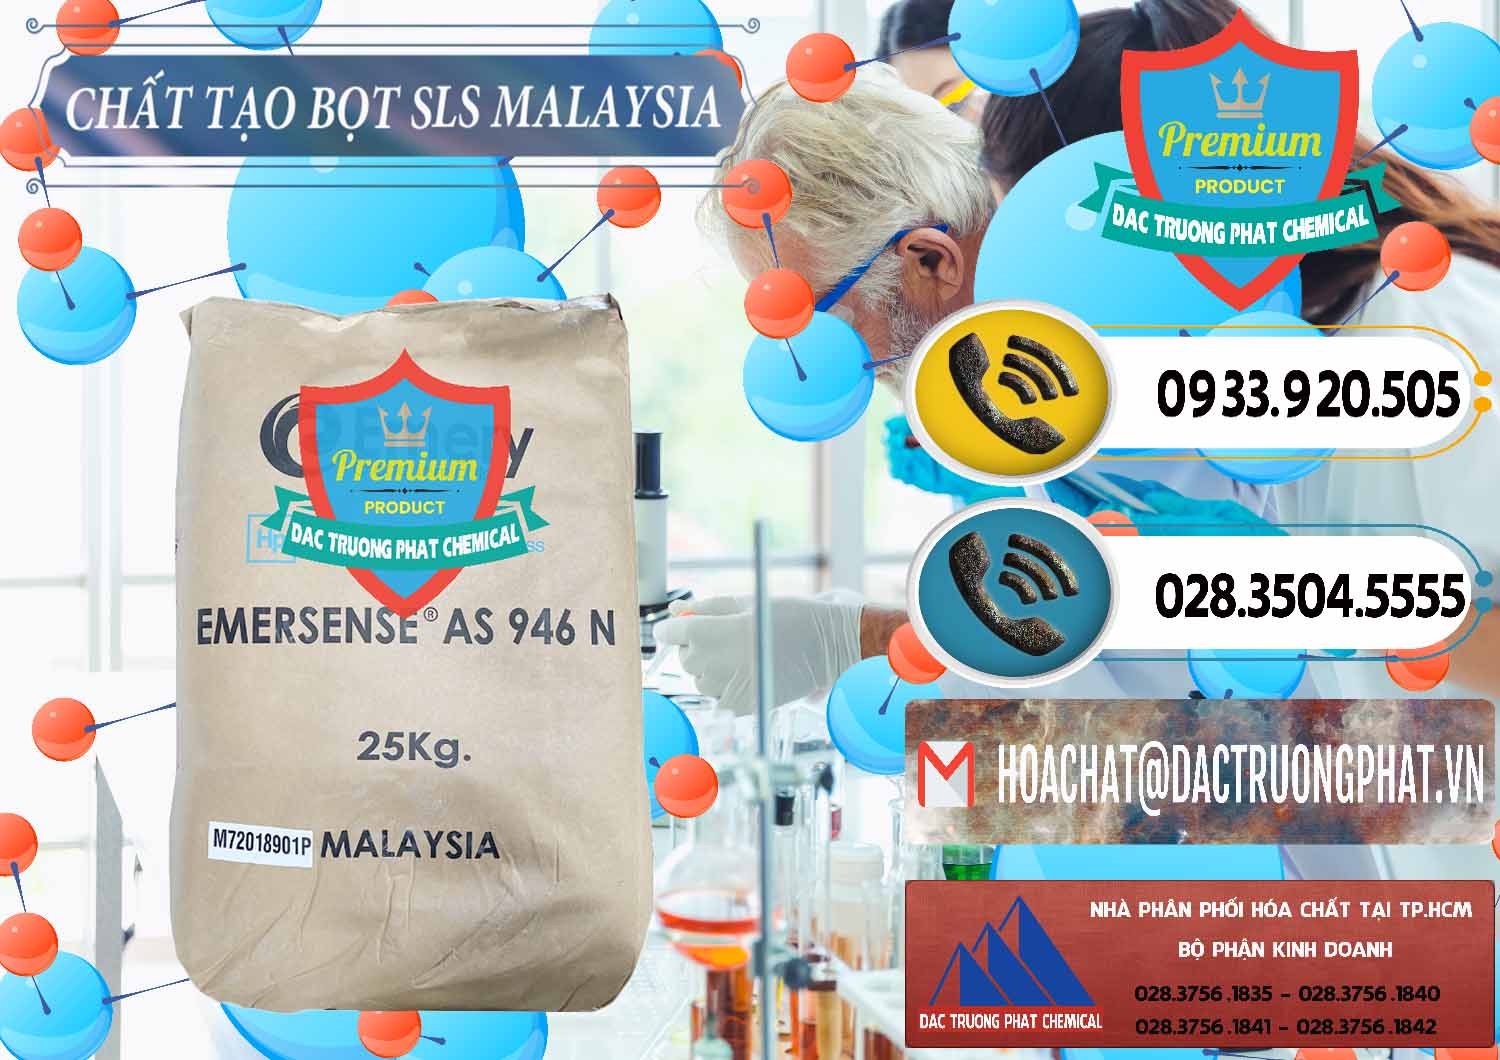 Công ty bán và phân phối Chất Tạo Bọt SLS Emery - Emersense AS 946N Mã Lai Malaysia - 0423 - Cung ứng ( phân phối ) hóa chất tại TP.HCM - hoachatdetnhuom.vn